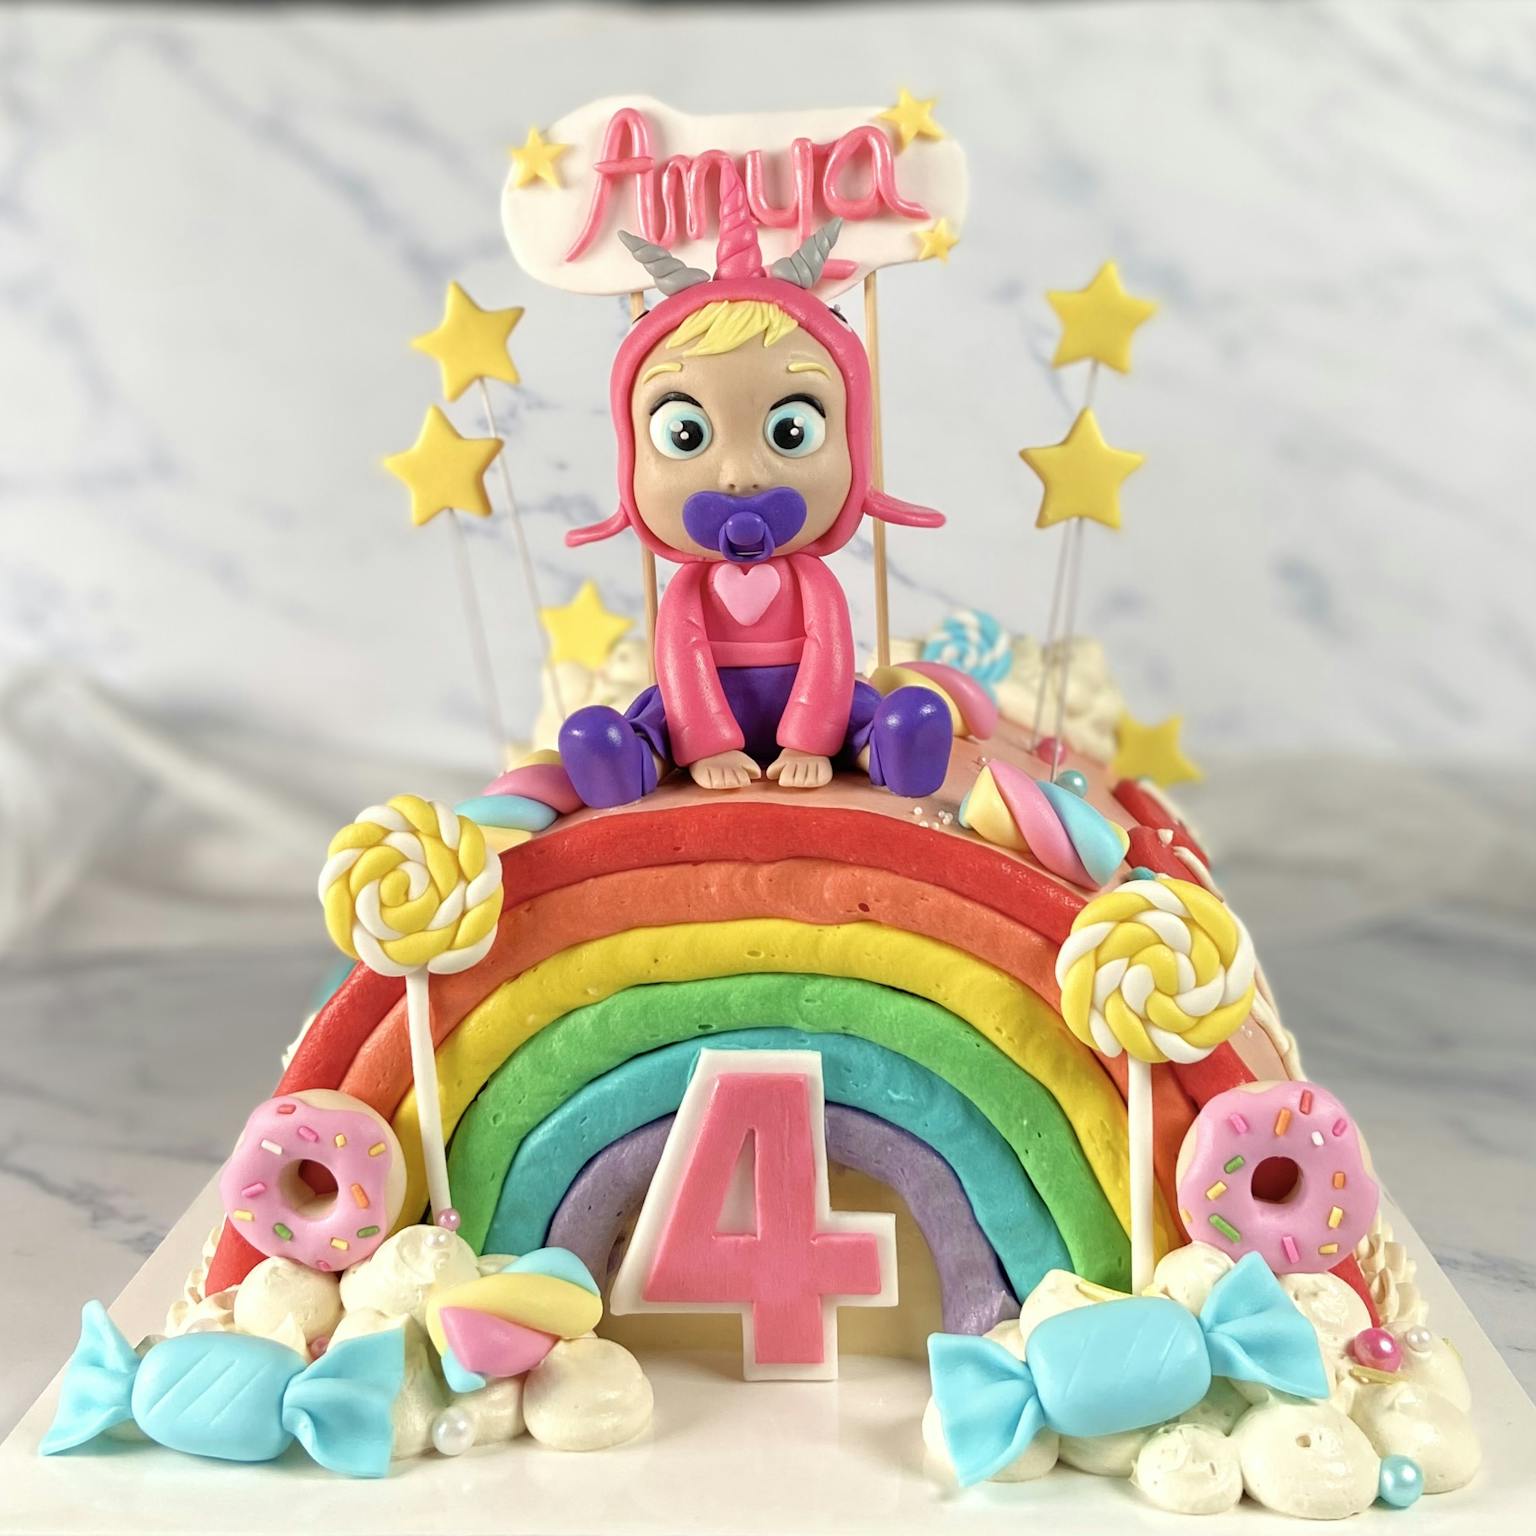 100% edible fondant sculpted rainbow themed cake